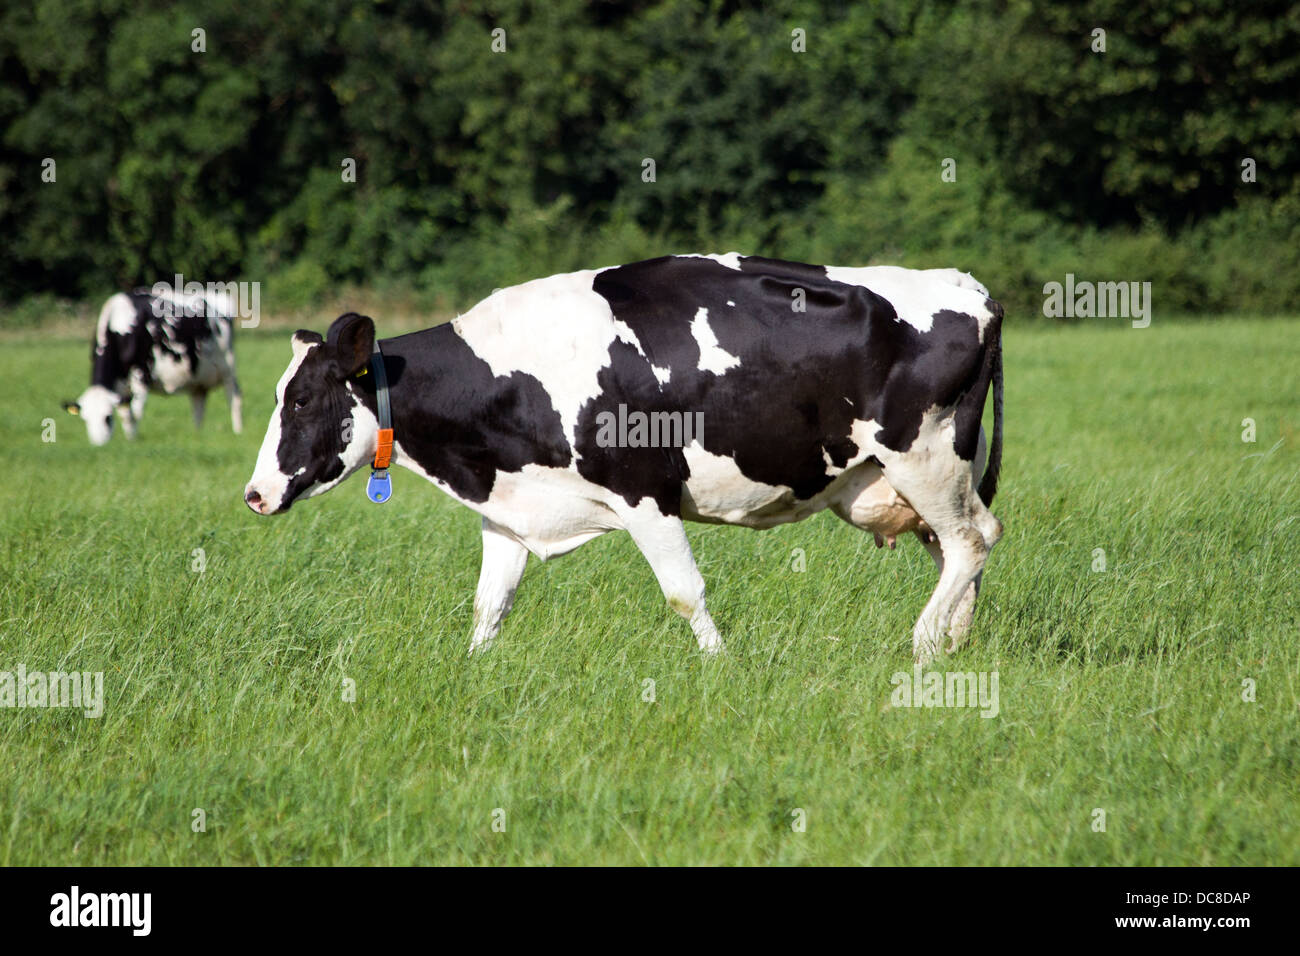 Les vaches noires et blanches sur une terre agricole Banque D'Images